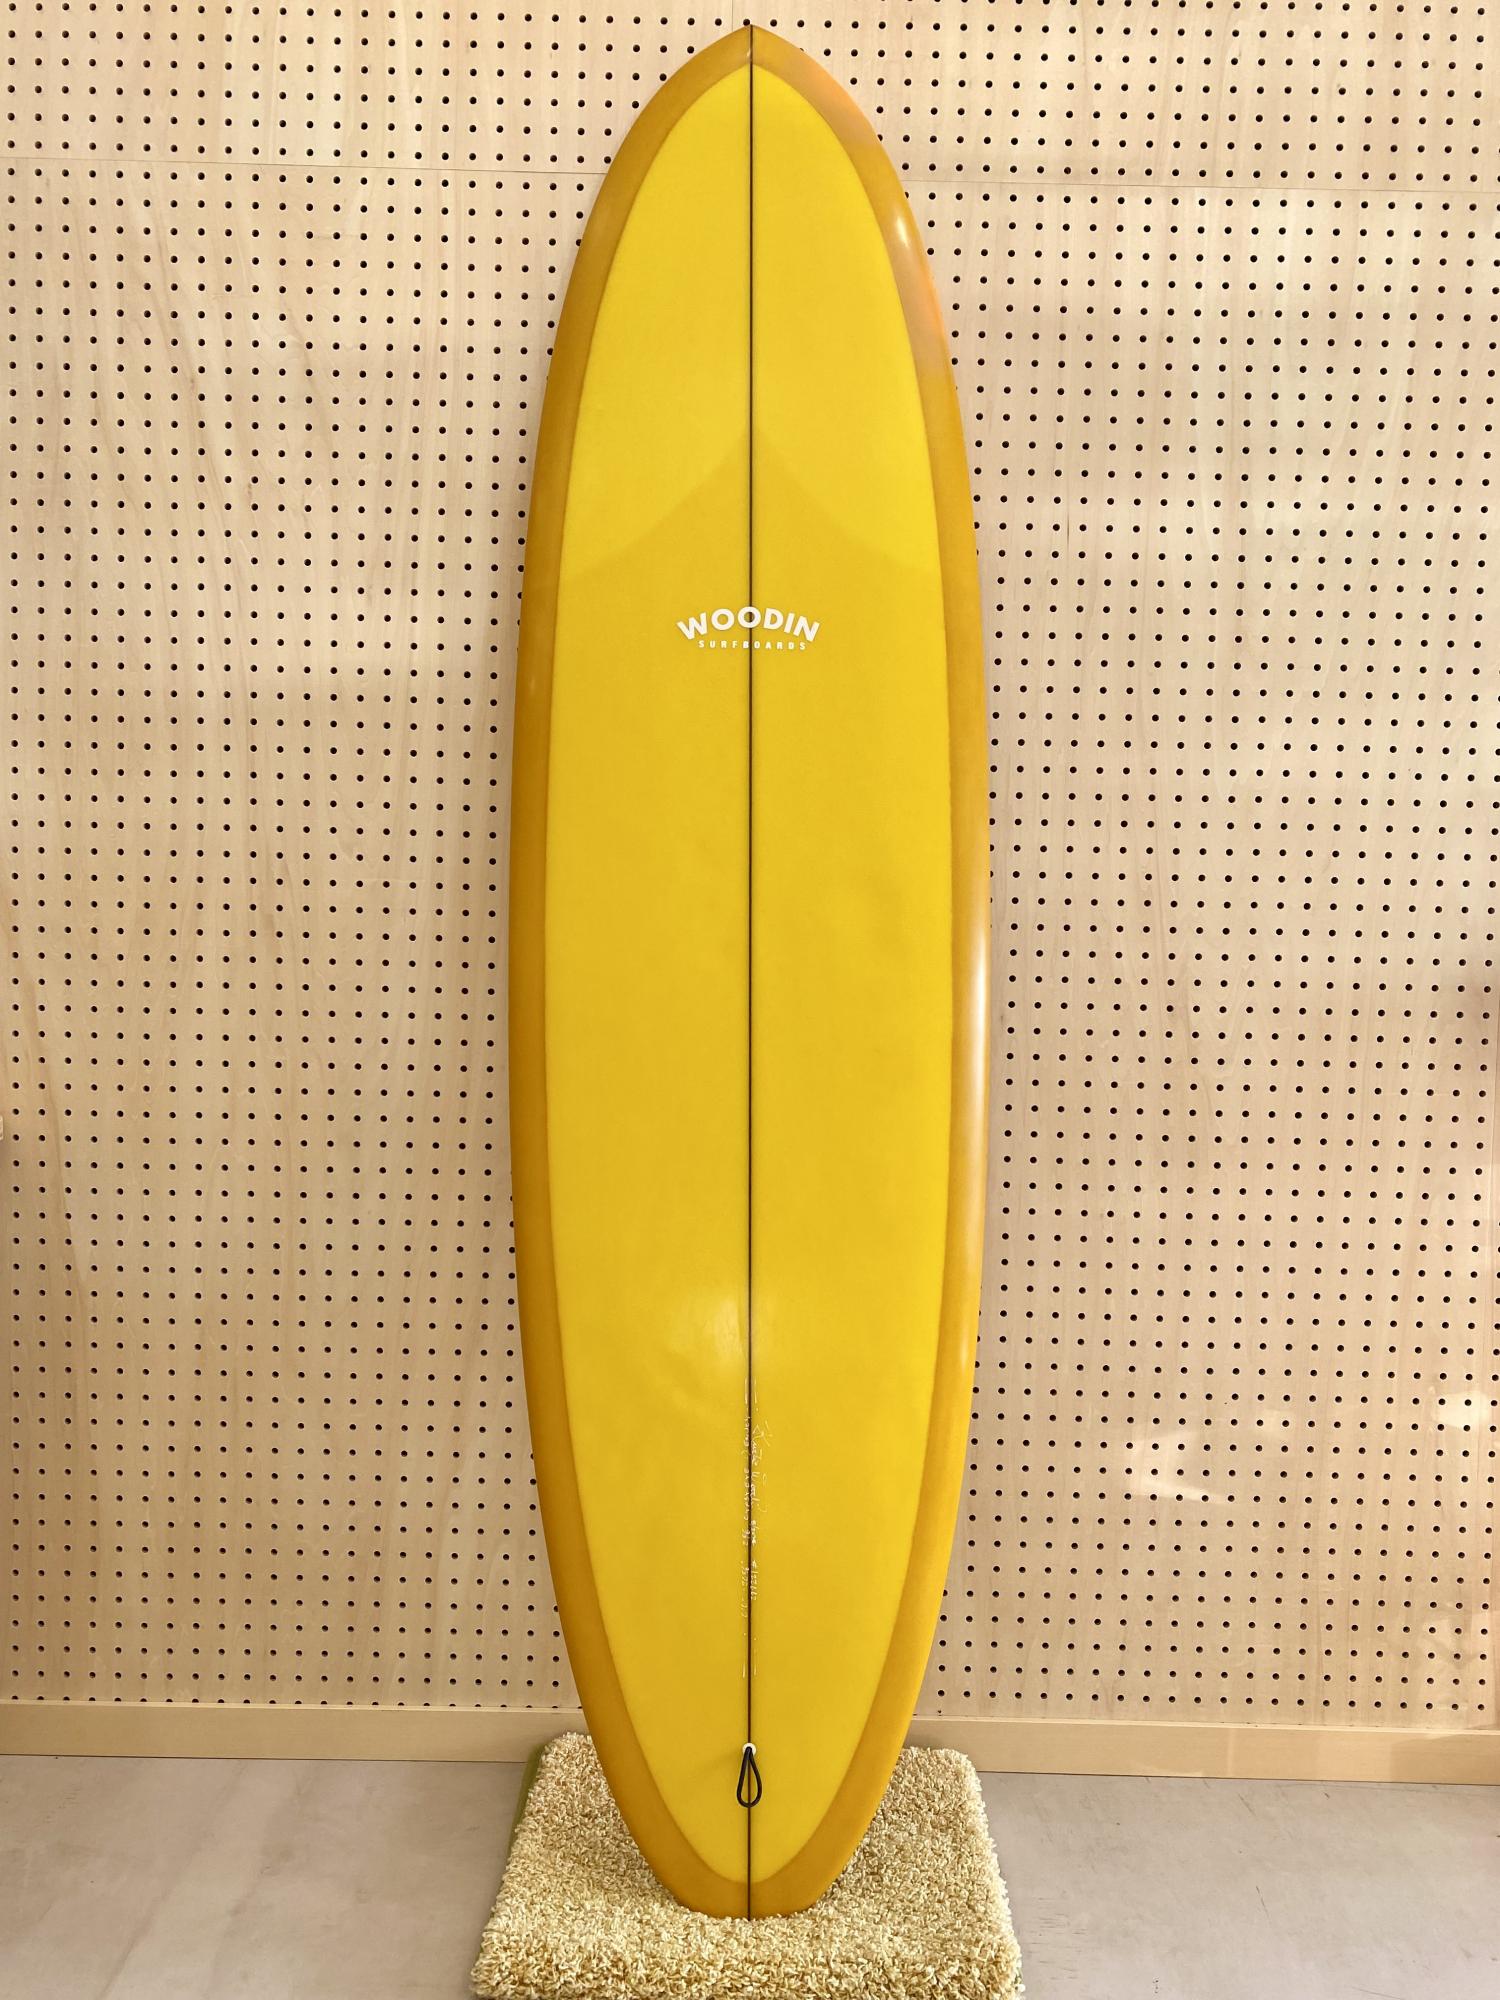 Gypsy Eye model 6.6 WOODIN SURFBOARDS